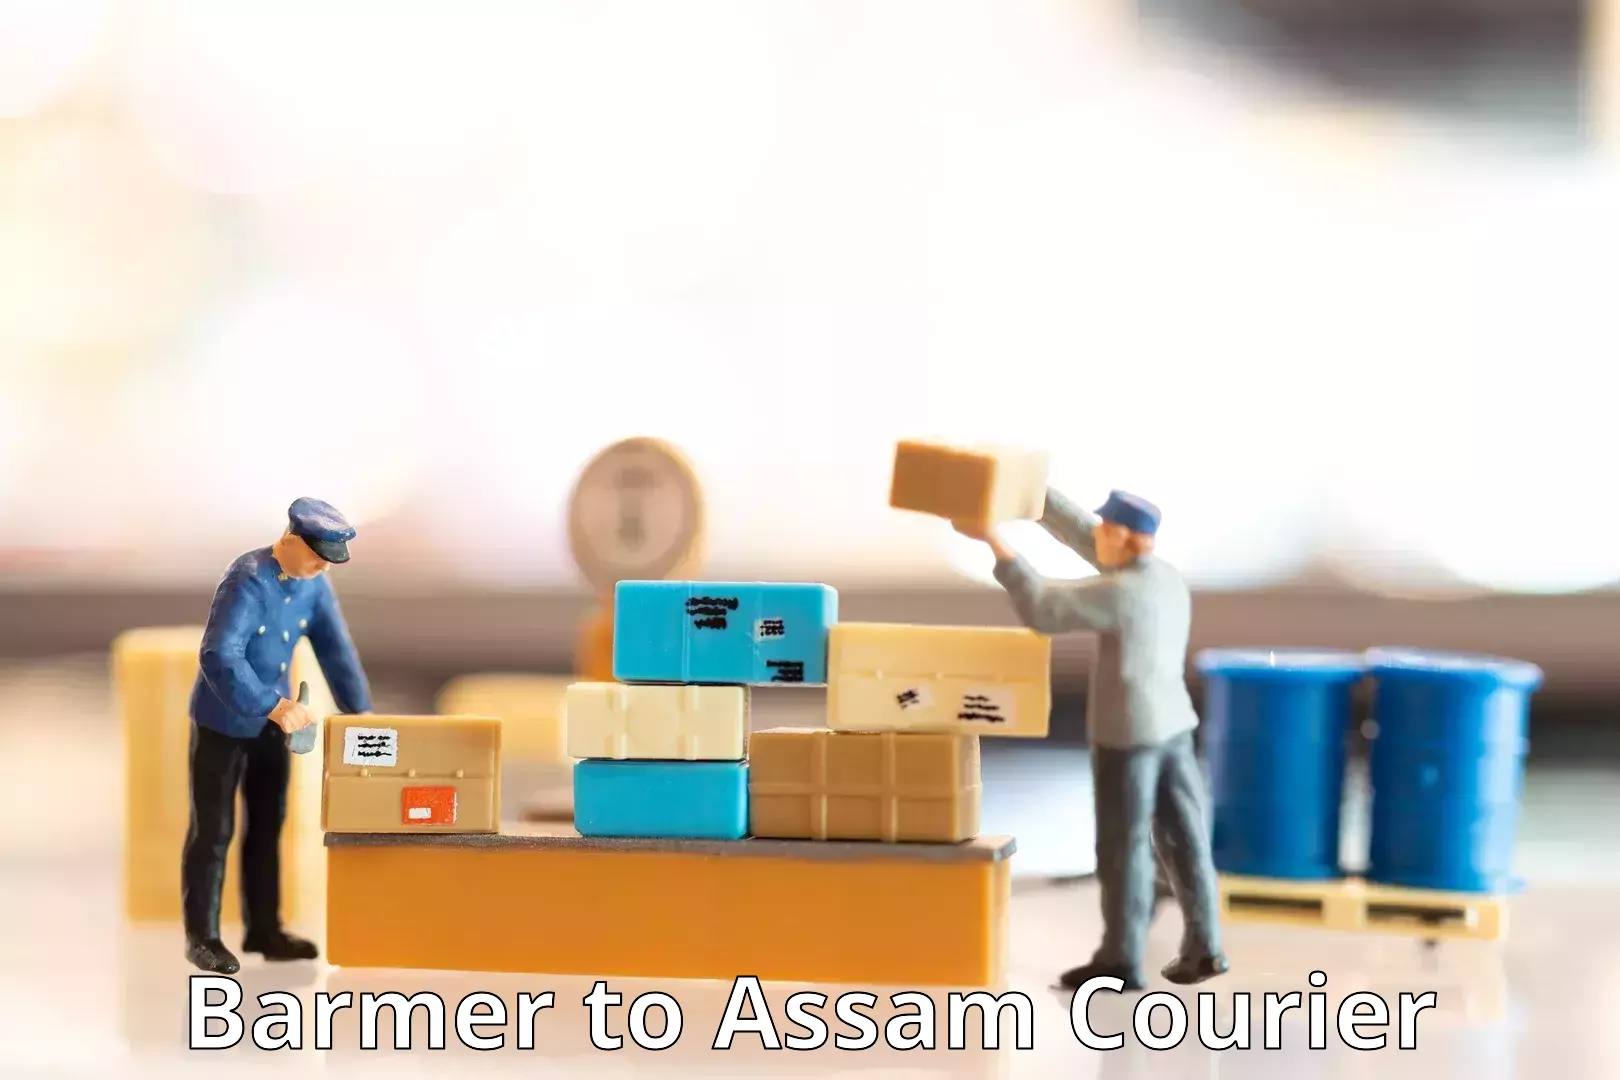 Affordable parcel service Barmer to Assam